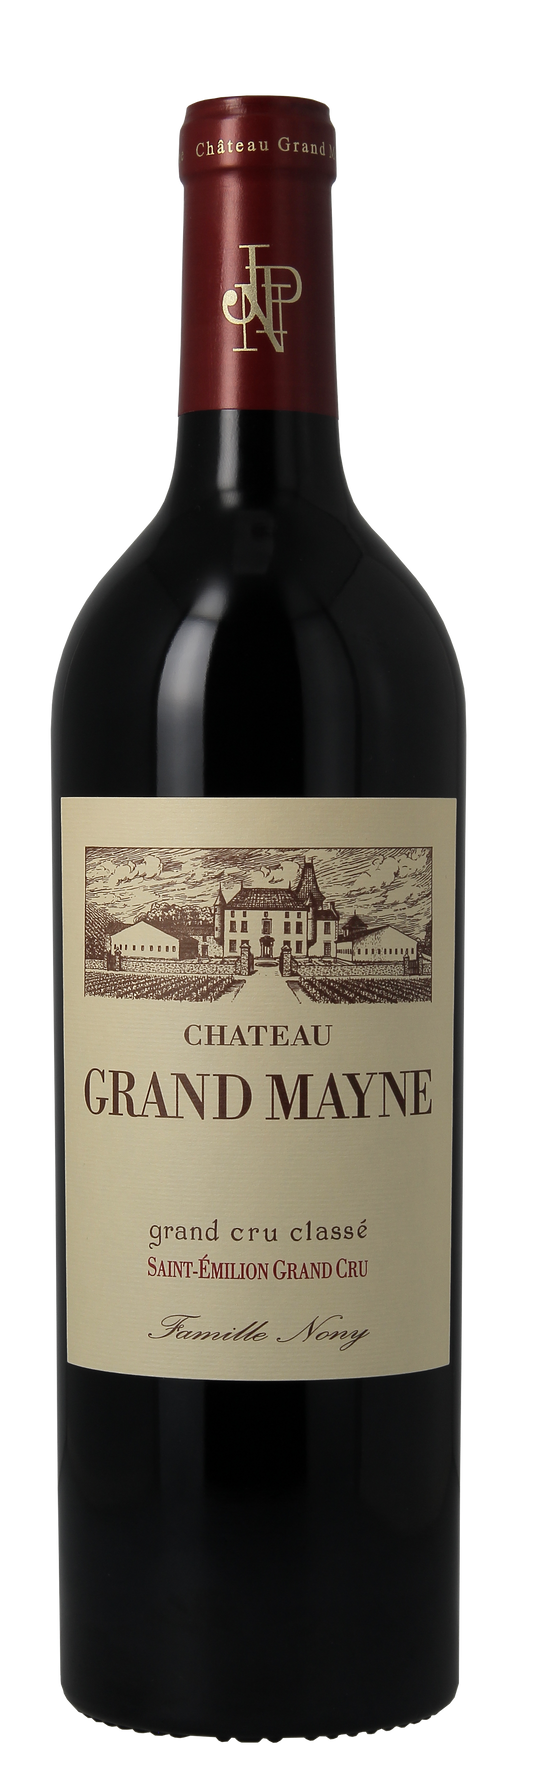 Chateau Grand Mayne - 2002 (750ml)